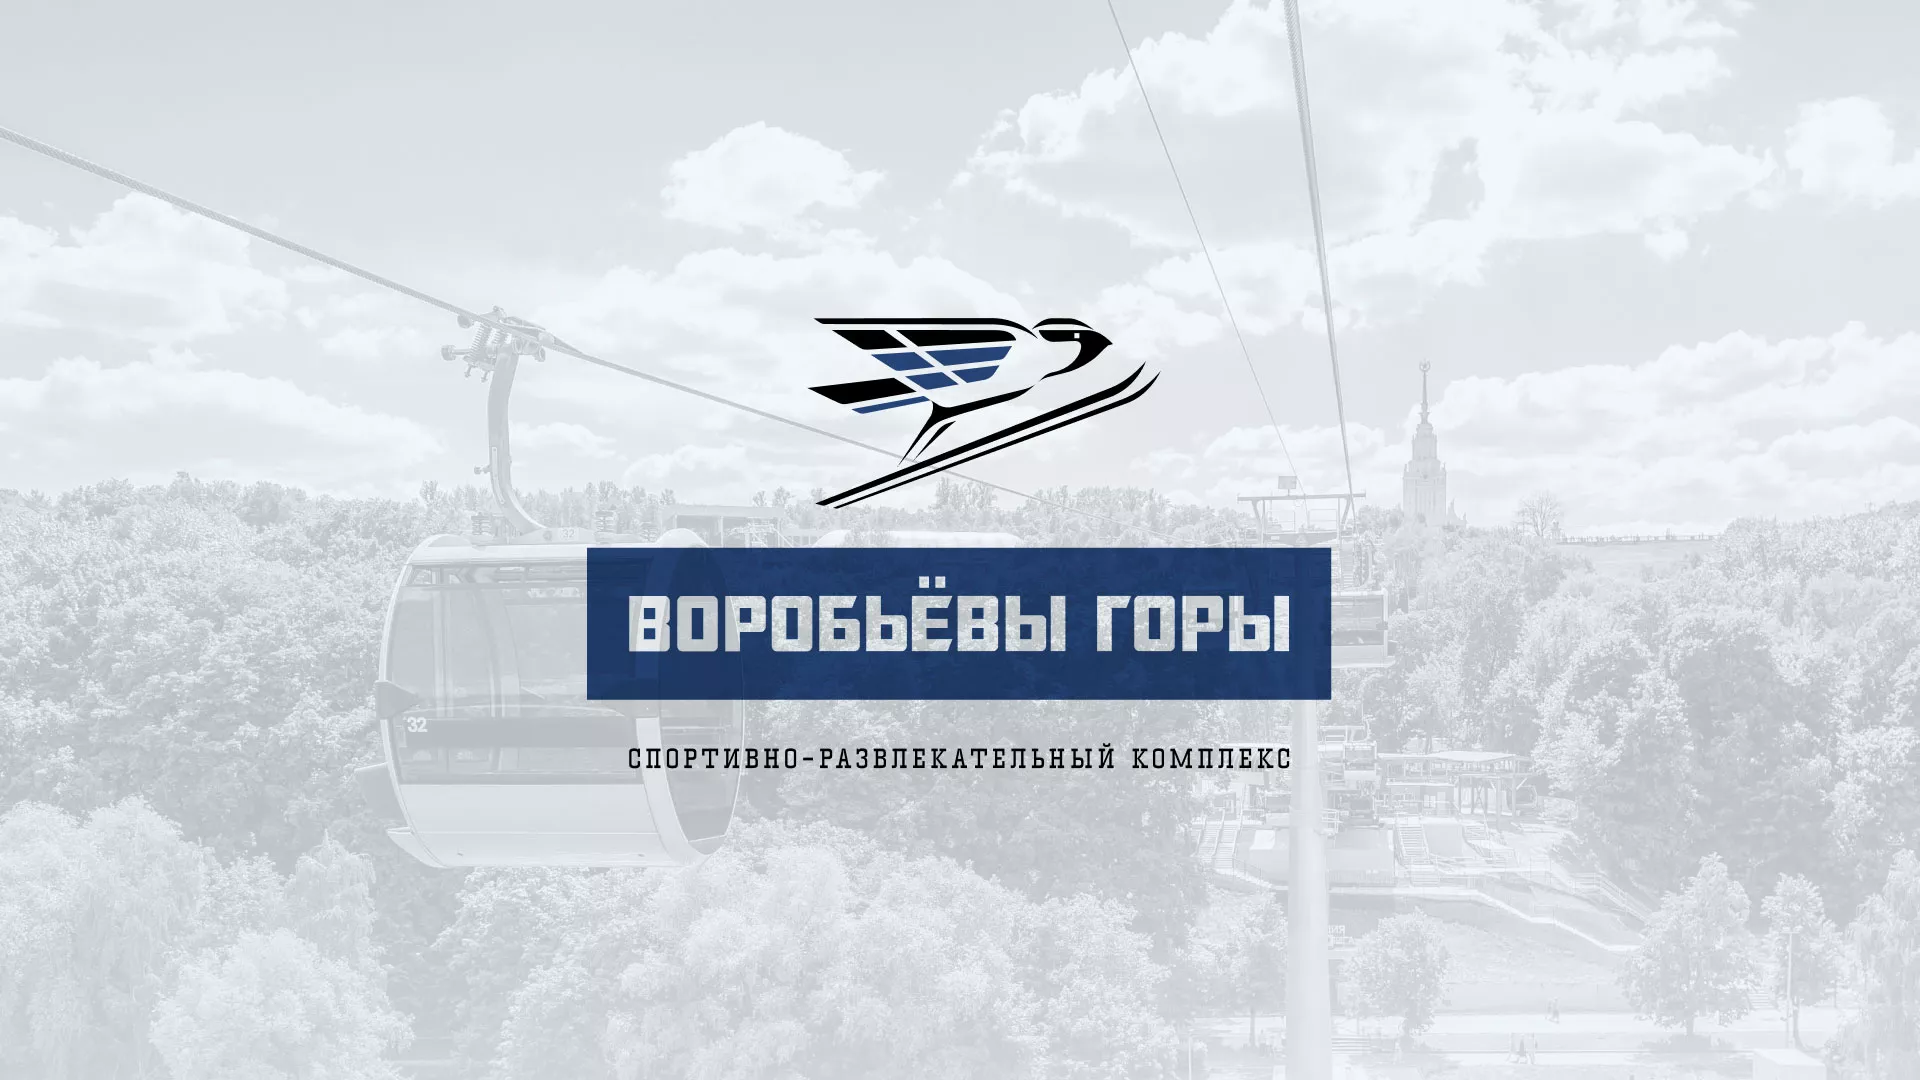 Разработка сайта в Медногорске для спортивно-развлекательного комплекса «Воробьёвы горы»